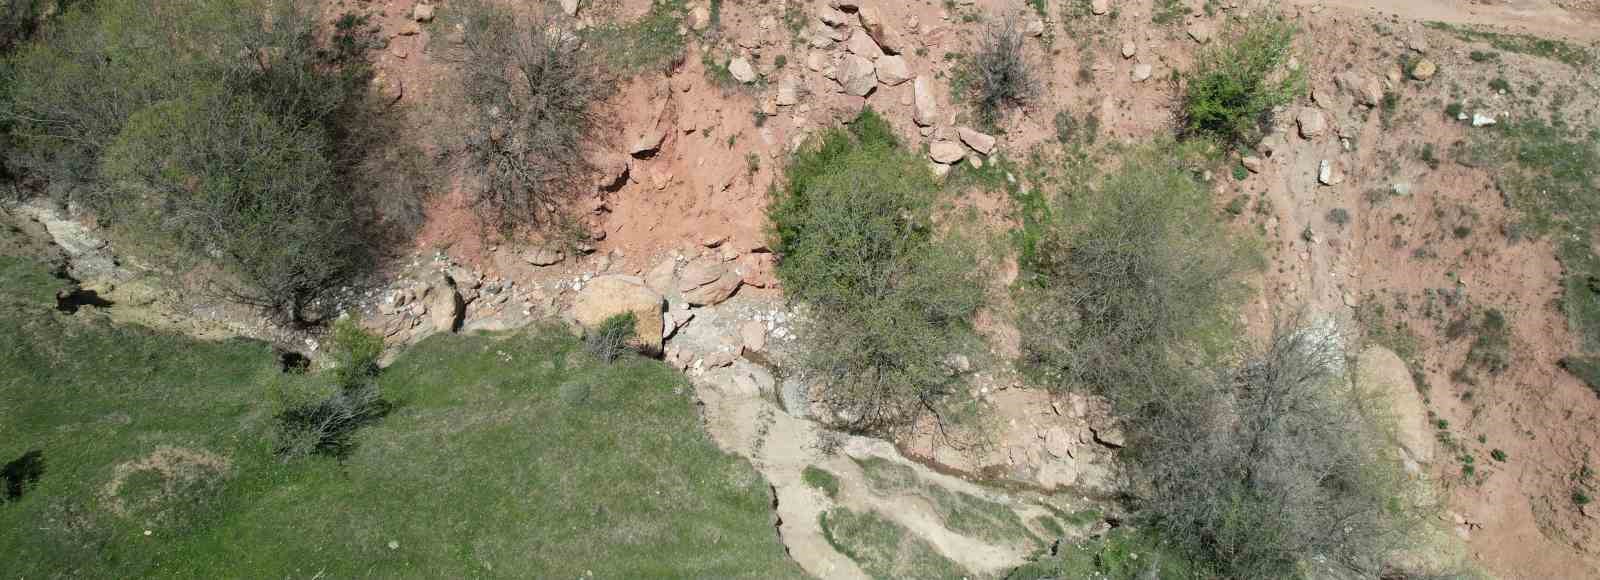 Tokat’ta kırılmanın olduğu fay hattı dron ile görüntülendi
